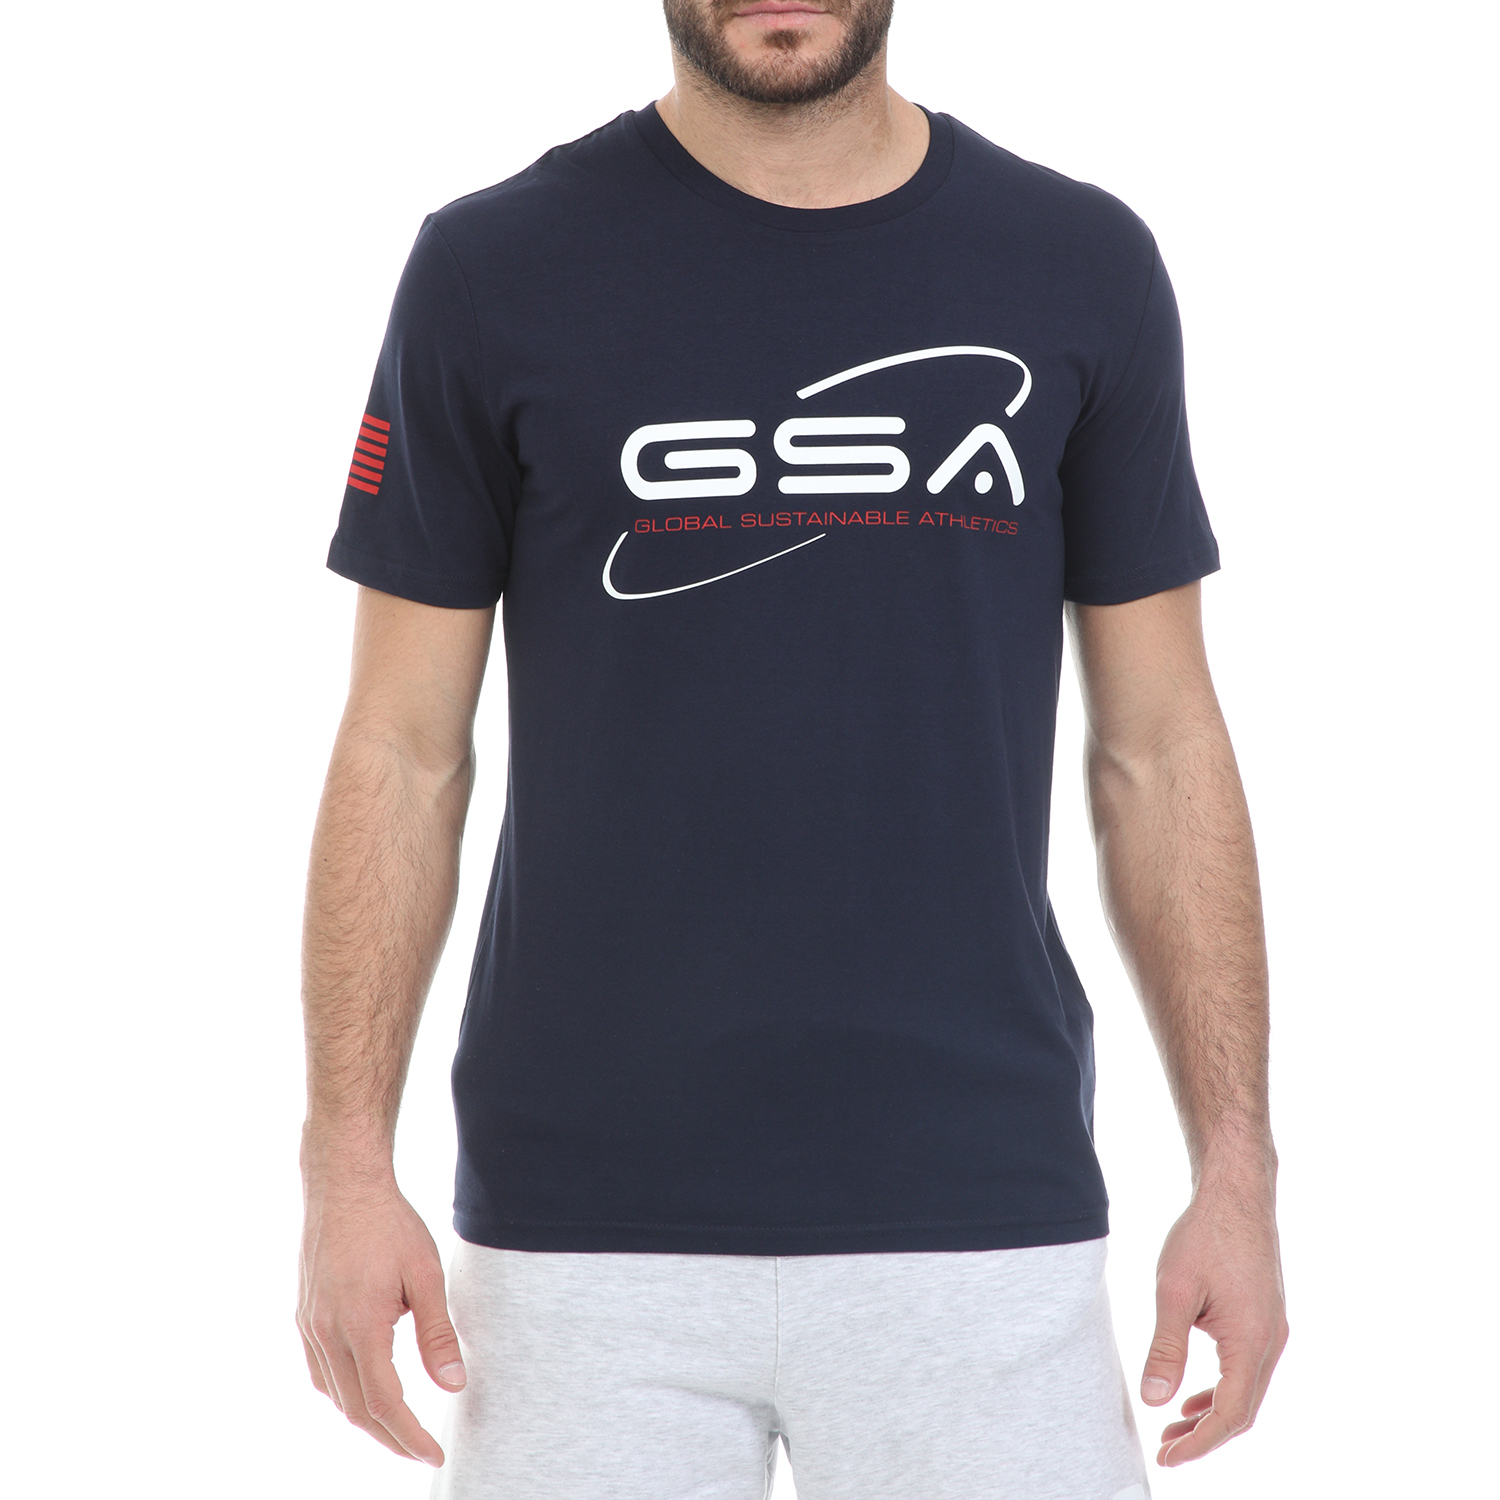 Ανδρικά/Ρούχα/Μπλούζες/Κοντομάνικες GSA - Ανδρικό t-shirt GSA ORGANIC PLUS SPACE TEE μπλε